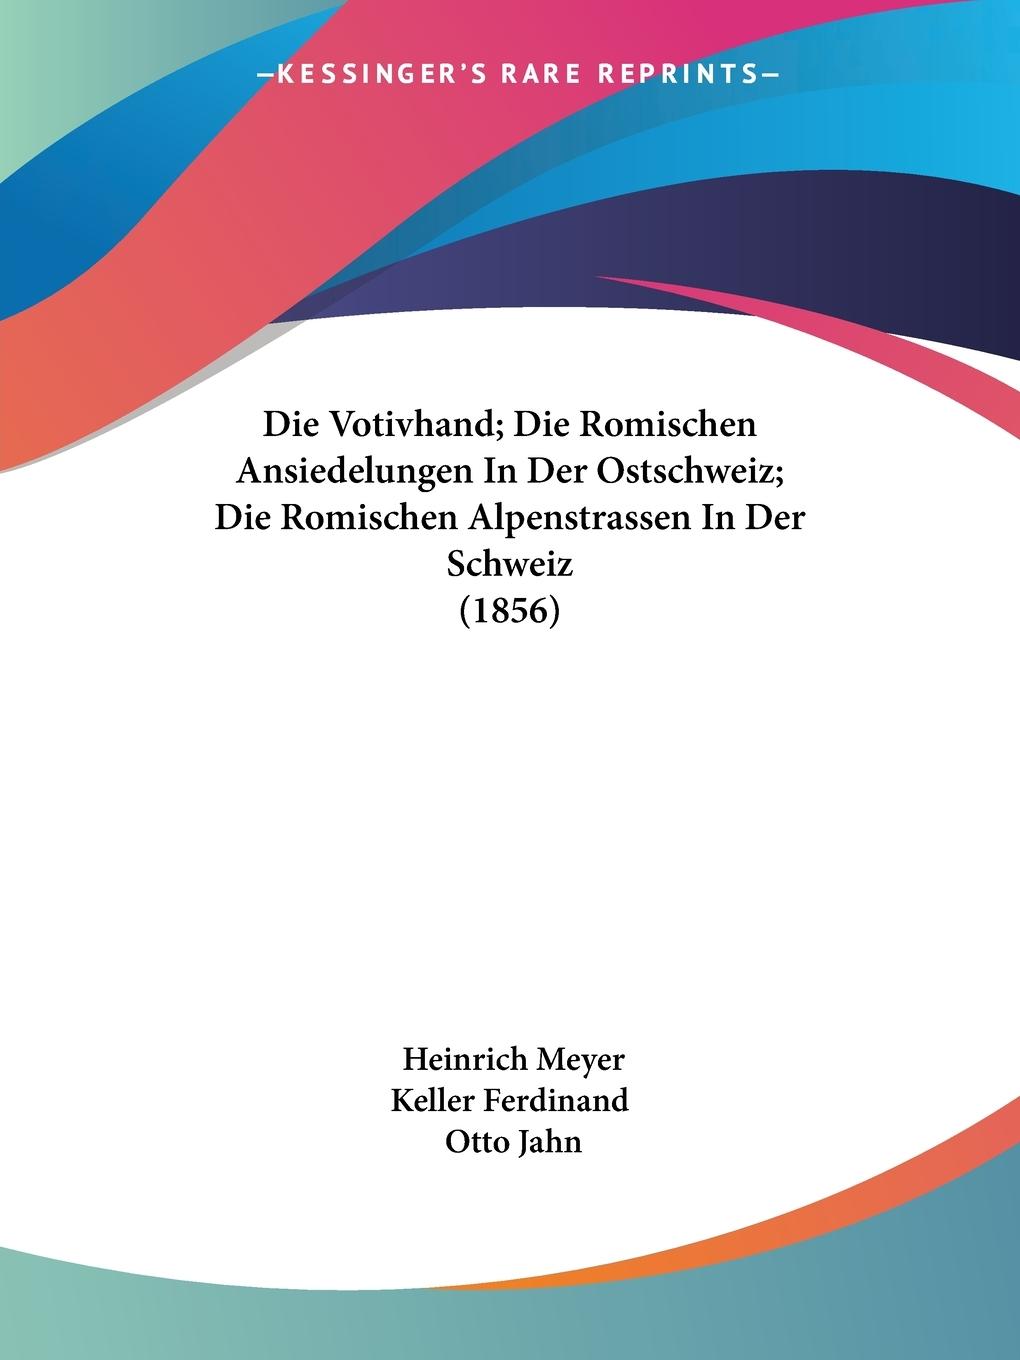 Die Votivhand; Die Romischen Ansiedelungen In Der Ostschweiz; Die Romischen Alpenstrassen In Der Schweiz (1856) - Meyer, Heinrich Keller Ferdinand Jahn, Otto